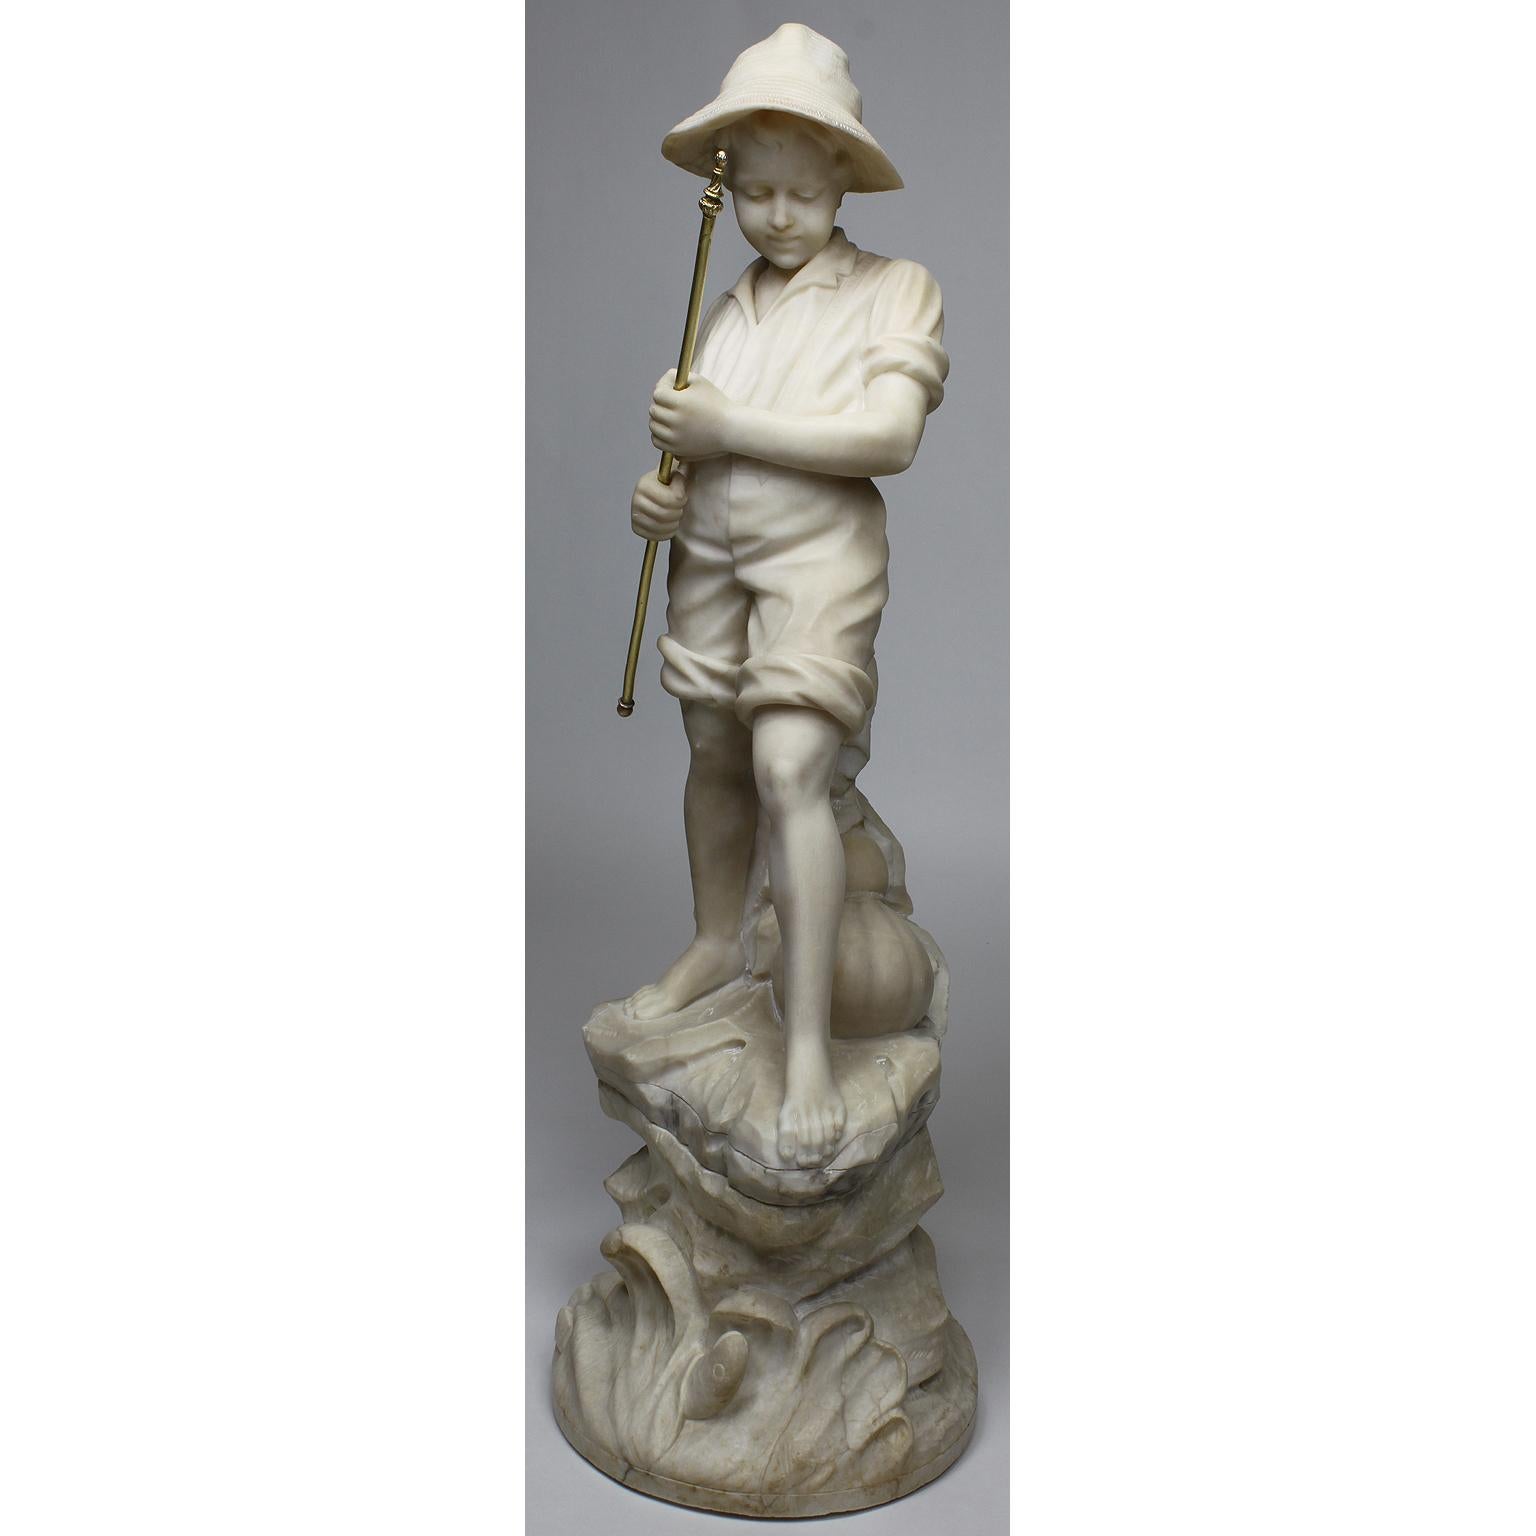 Une charmante figure italienne en albâtre sculpté du 19e-20e siècle représentant un garçon pêcheur. Le jeune garçon portant une blouse, les jambes du pantalon retroussées jusqu'aux genoux et un chapeau de paille, debout sur un affleurement rocheux